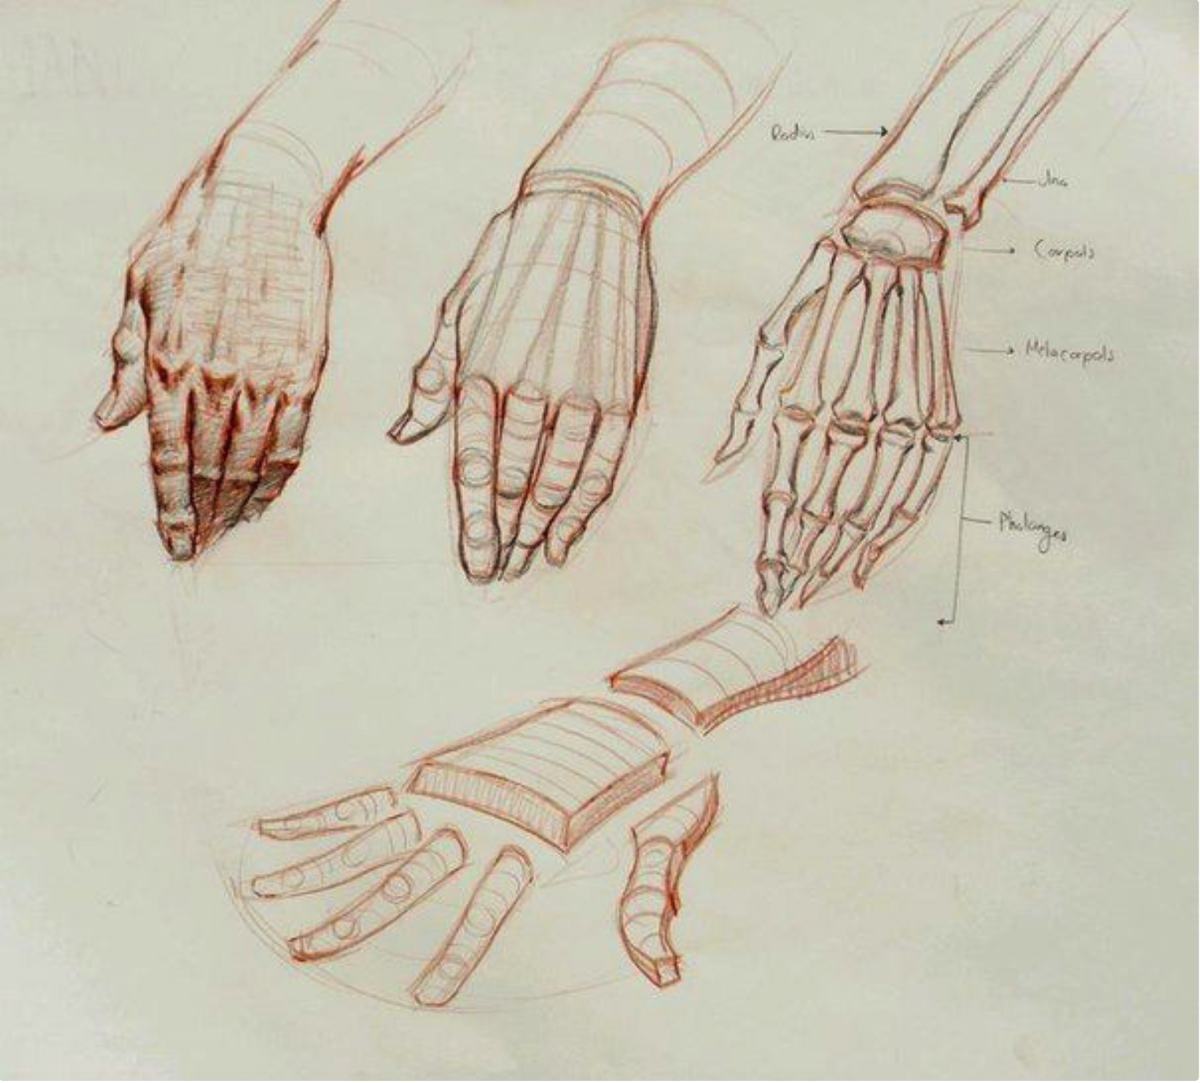 Анатомия Баммес кисти рук. Анатомия кисти референс. Руки референс анатомия кисти. Скелет кисти руки человека референс.